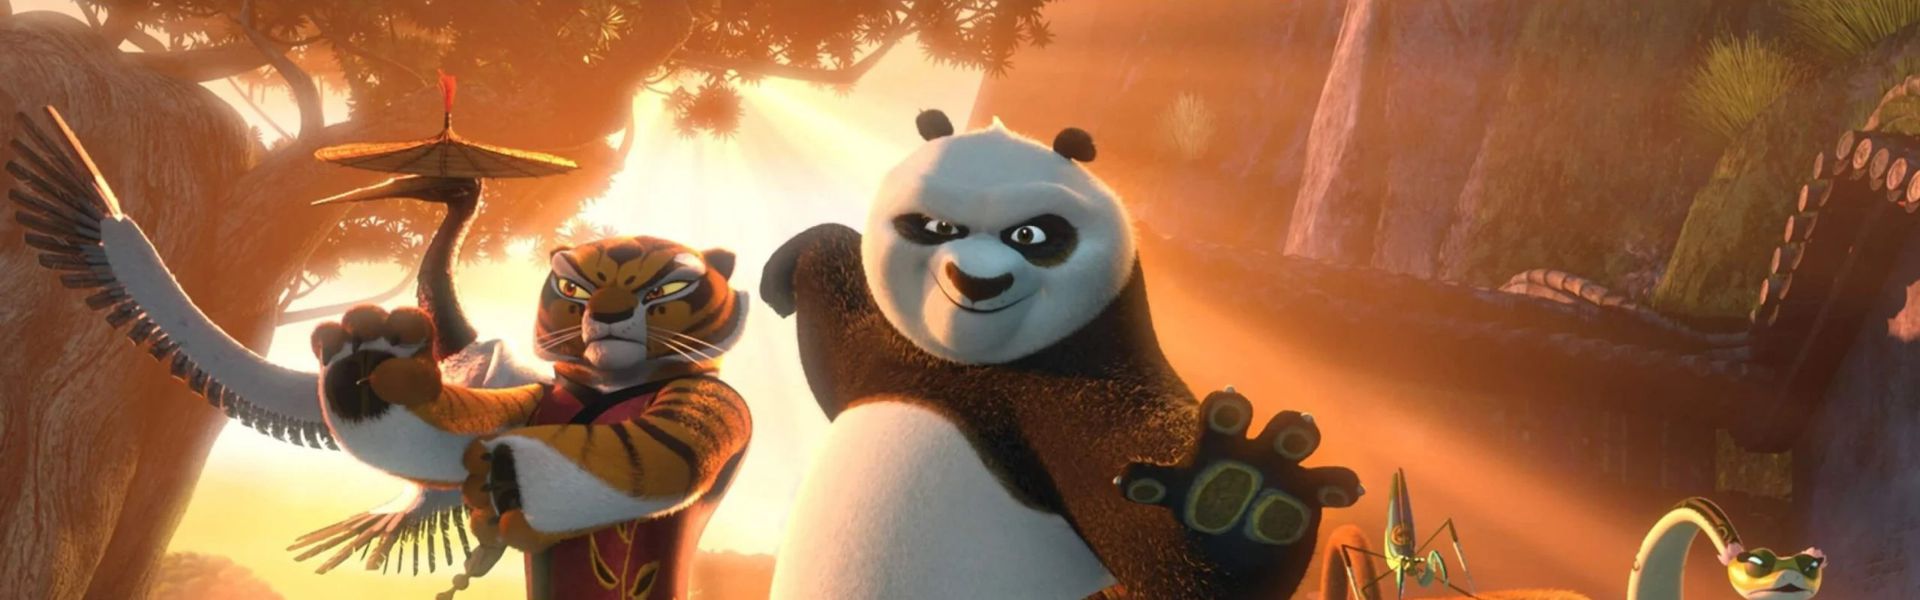 Kung Fu panda 4 / SINK